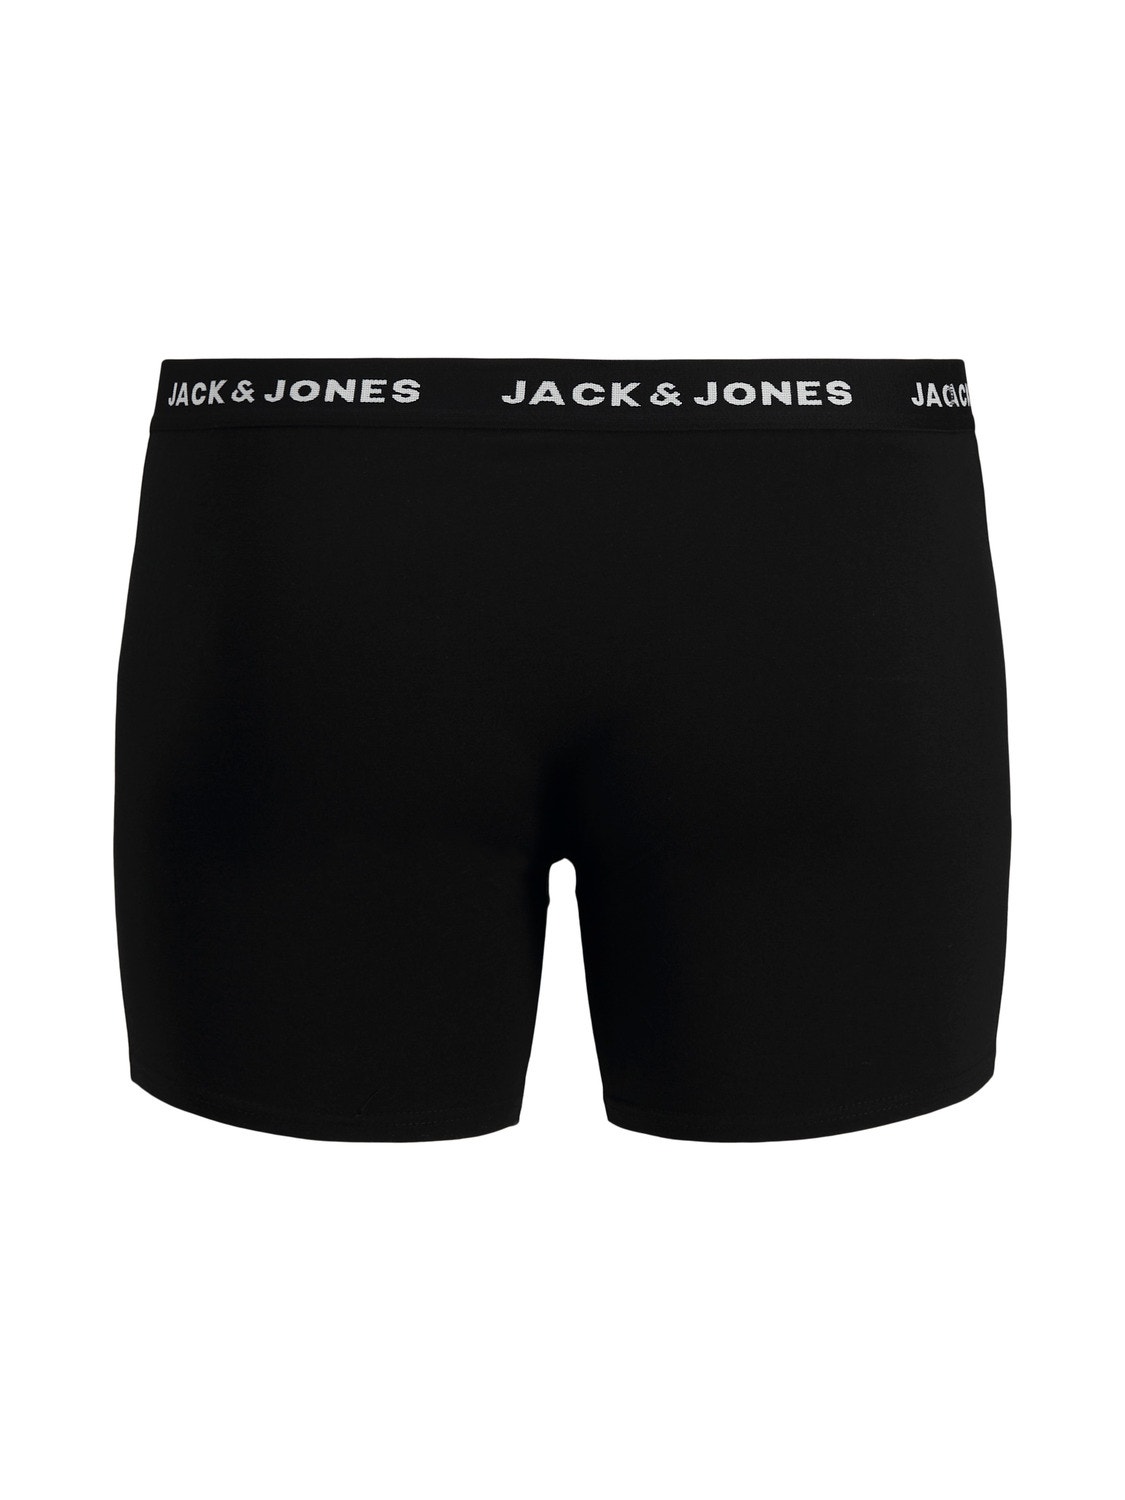 Jack & Jones Plus Size 5-pakuotės Trumpikės -Black - 12194944